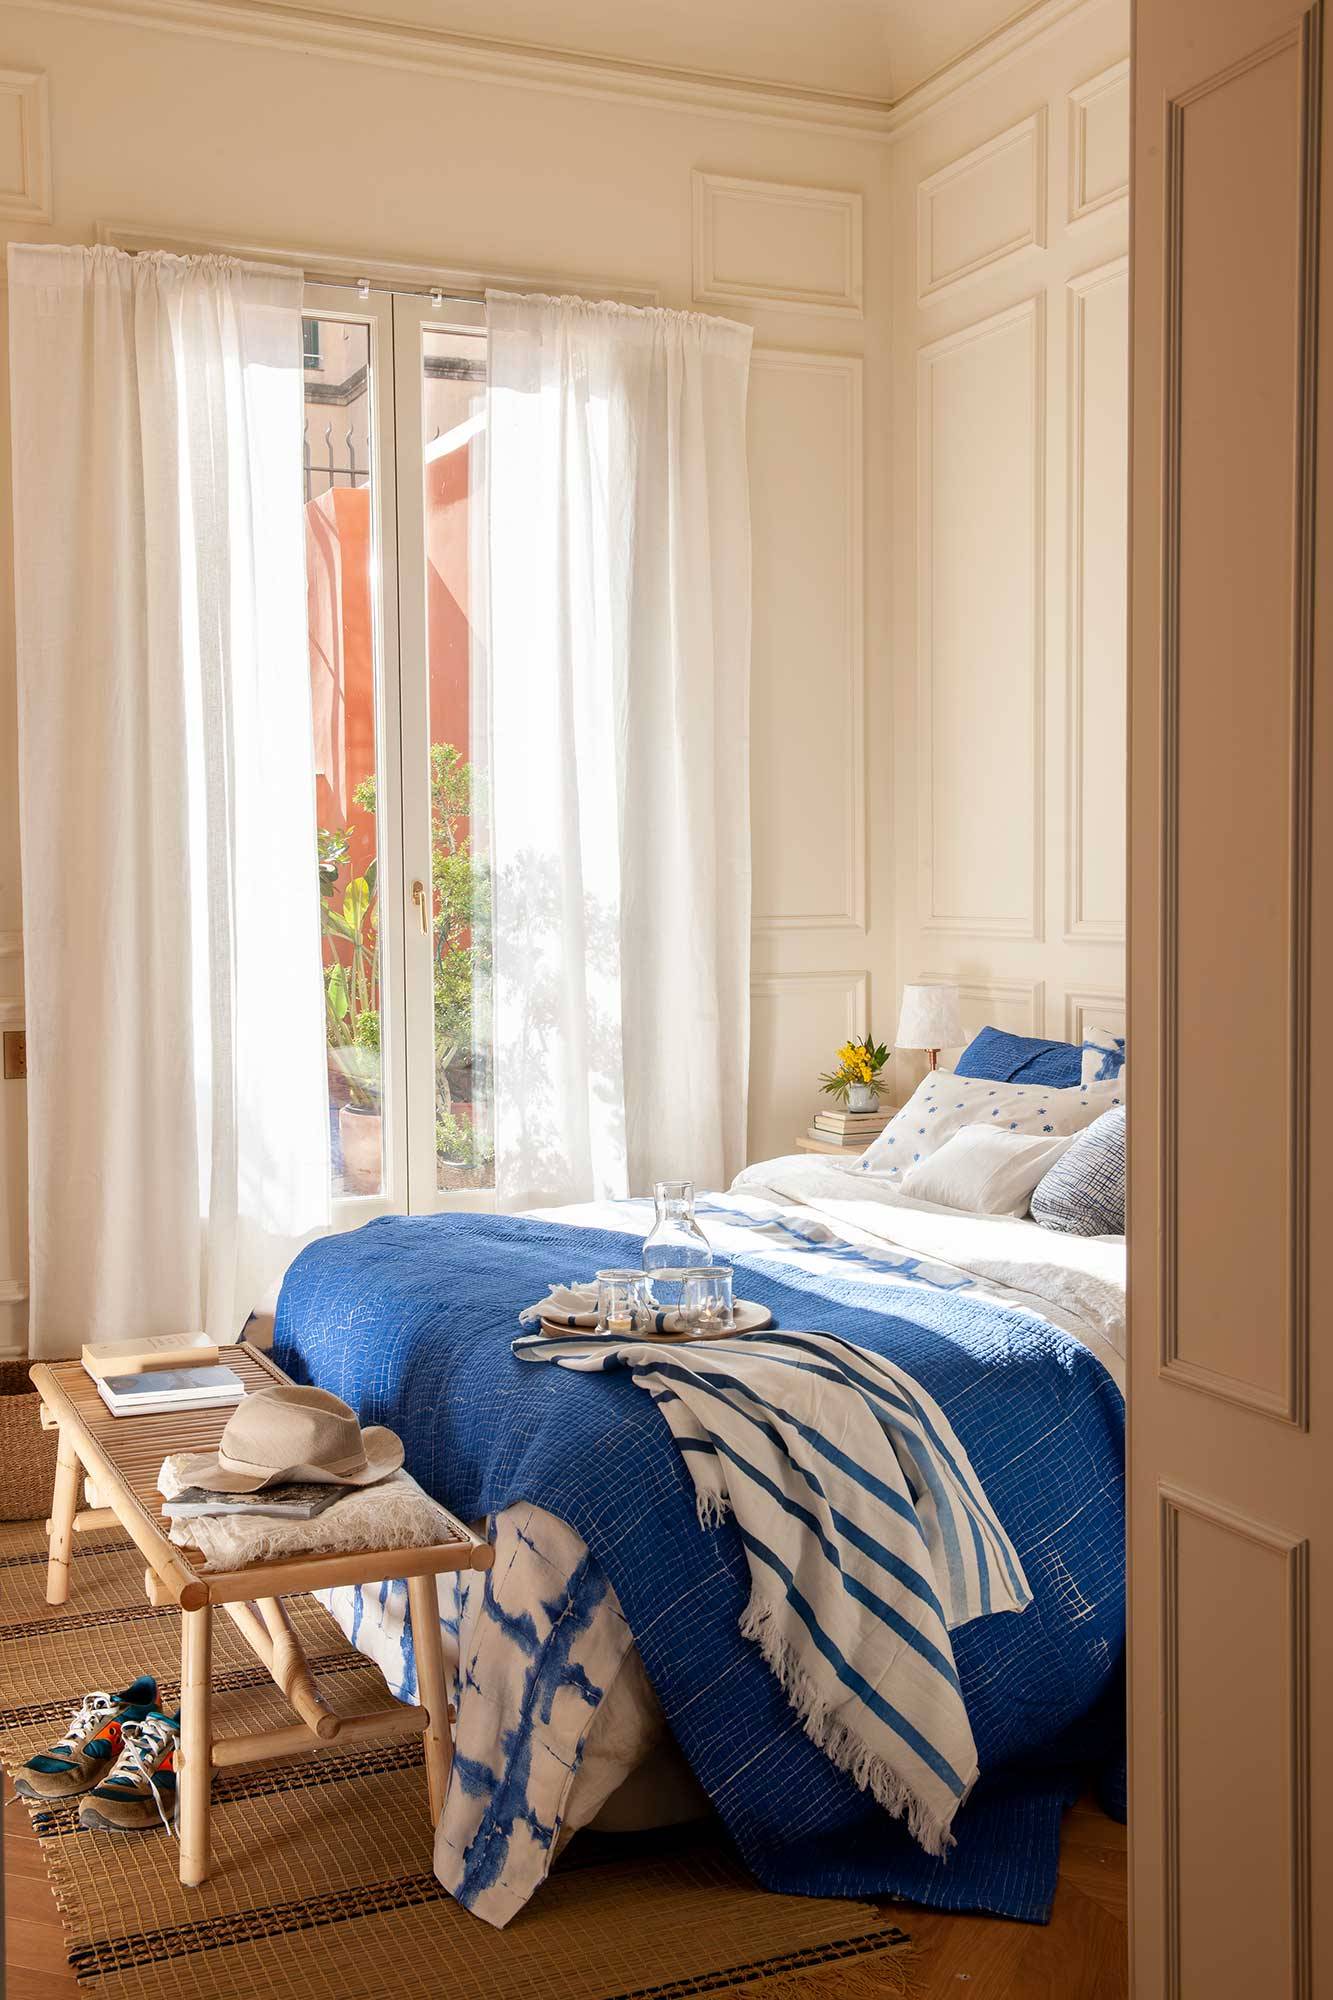 dormitorio decorado en neutros y azules_00501565 O